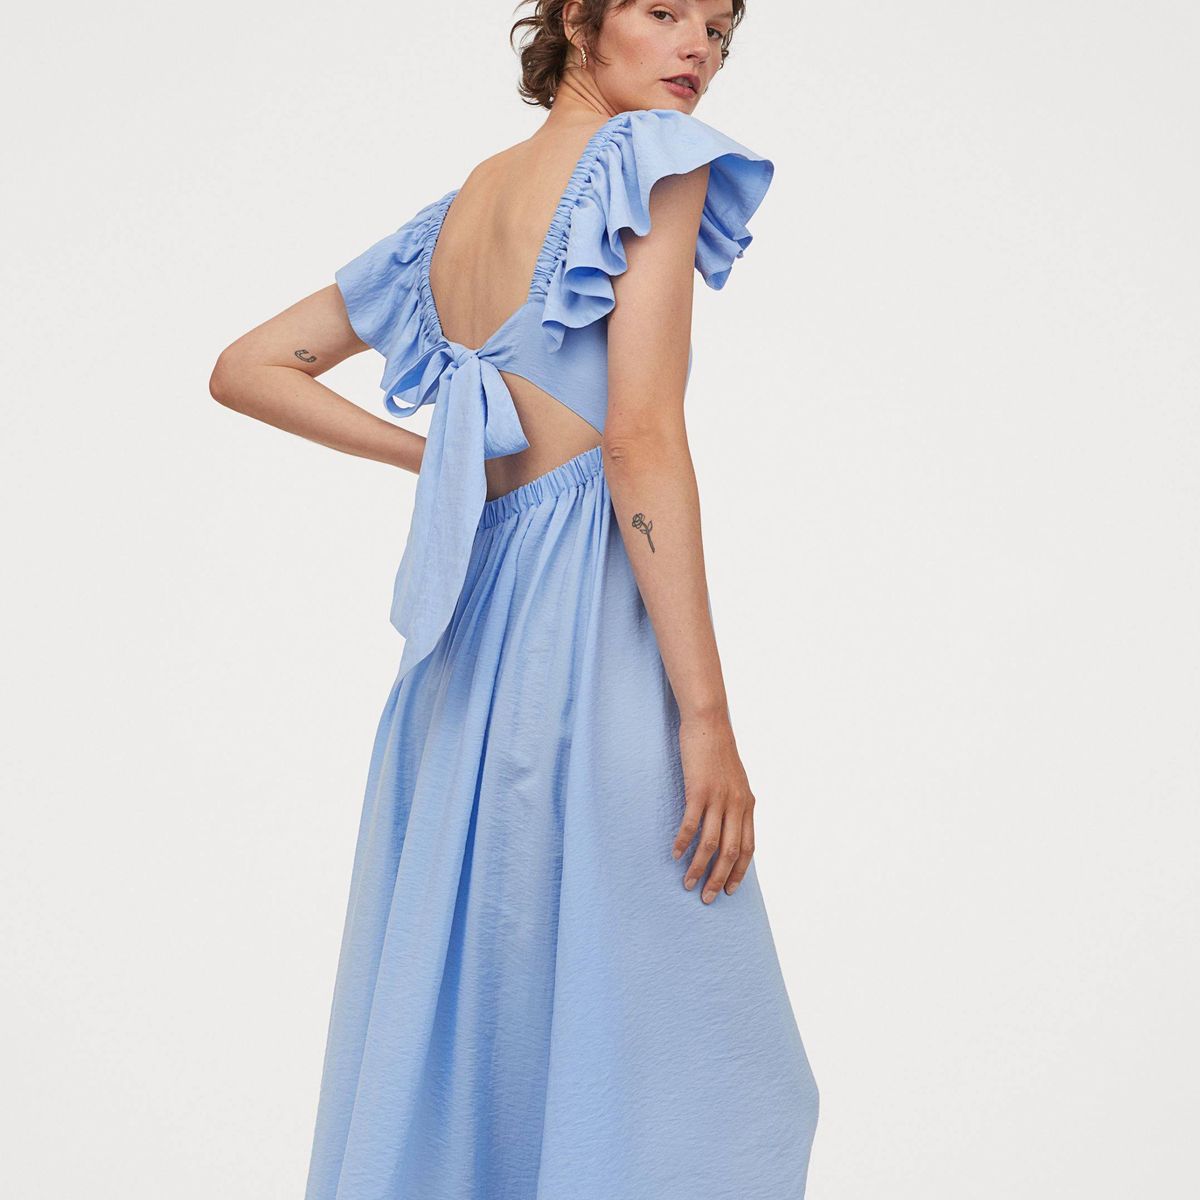 Este vestido azul de hace tipazo y revolucionará tus looks